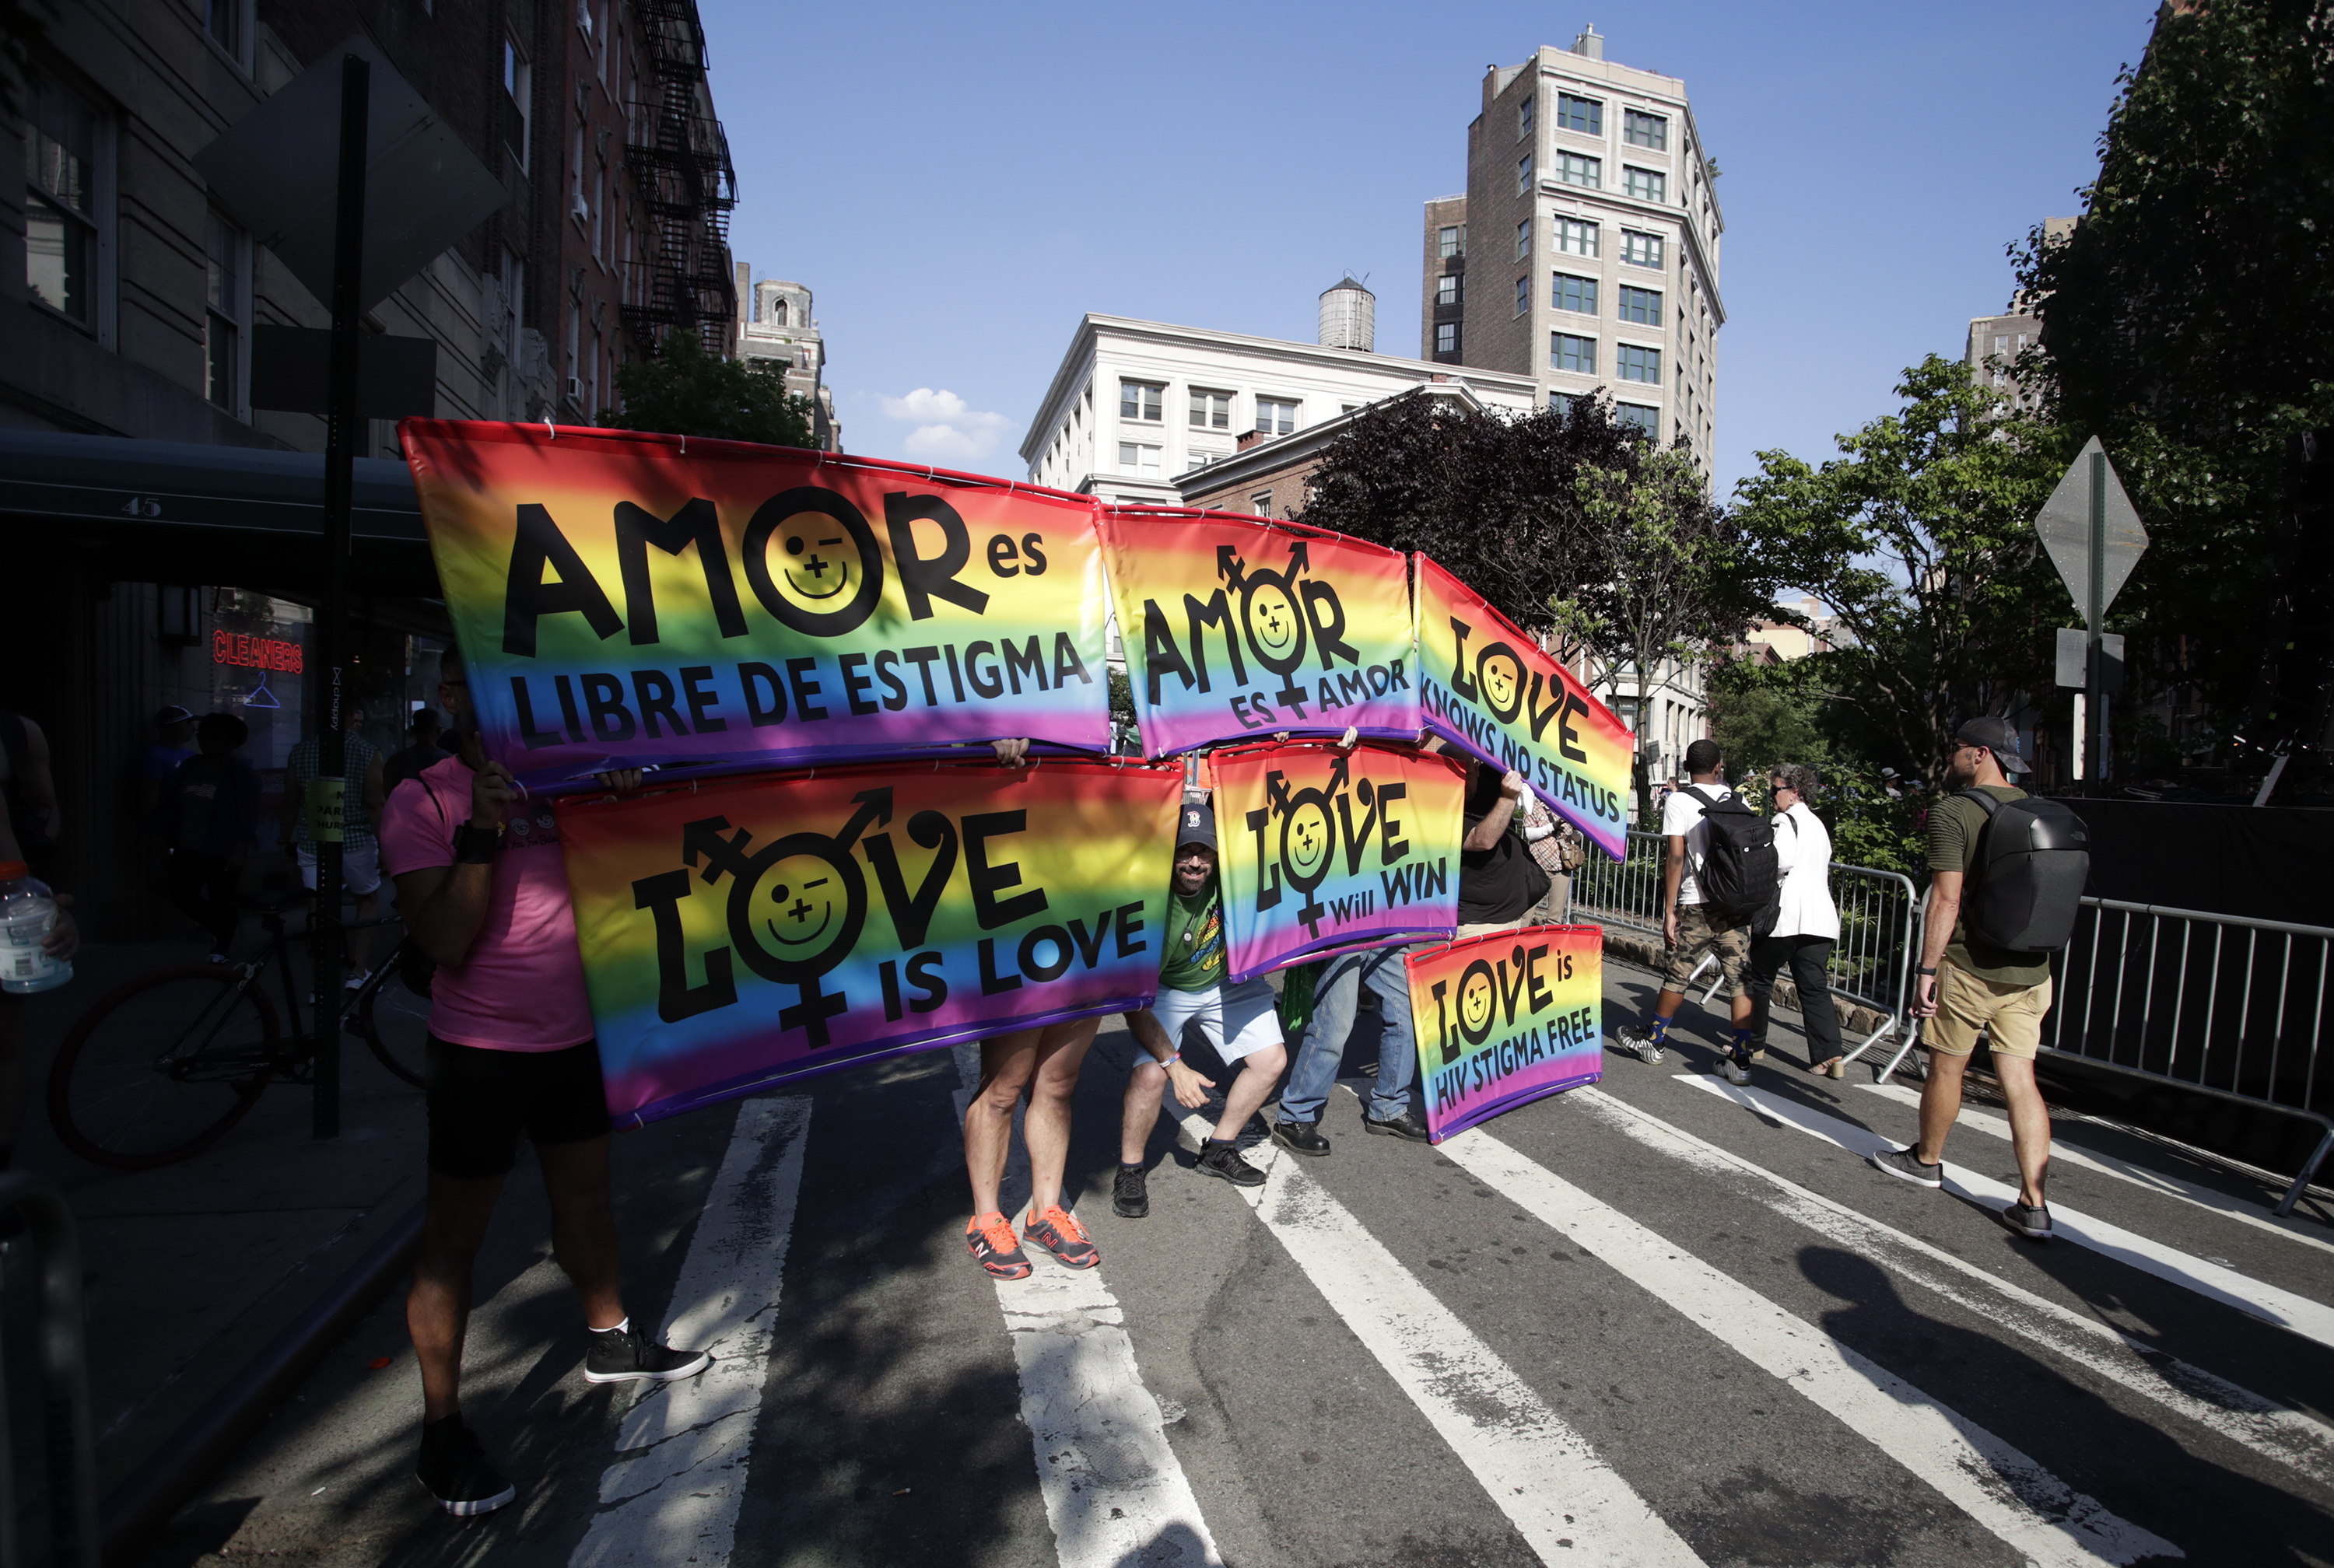 El 28 de junio de 1969, una redada de la policía en el bar del Inn de Stonewall, provocó grandes protestas en la comunidad gay de Nueva York. (Foto Prensa Libre: EFE)